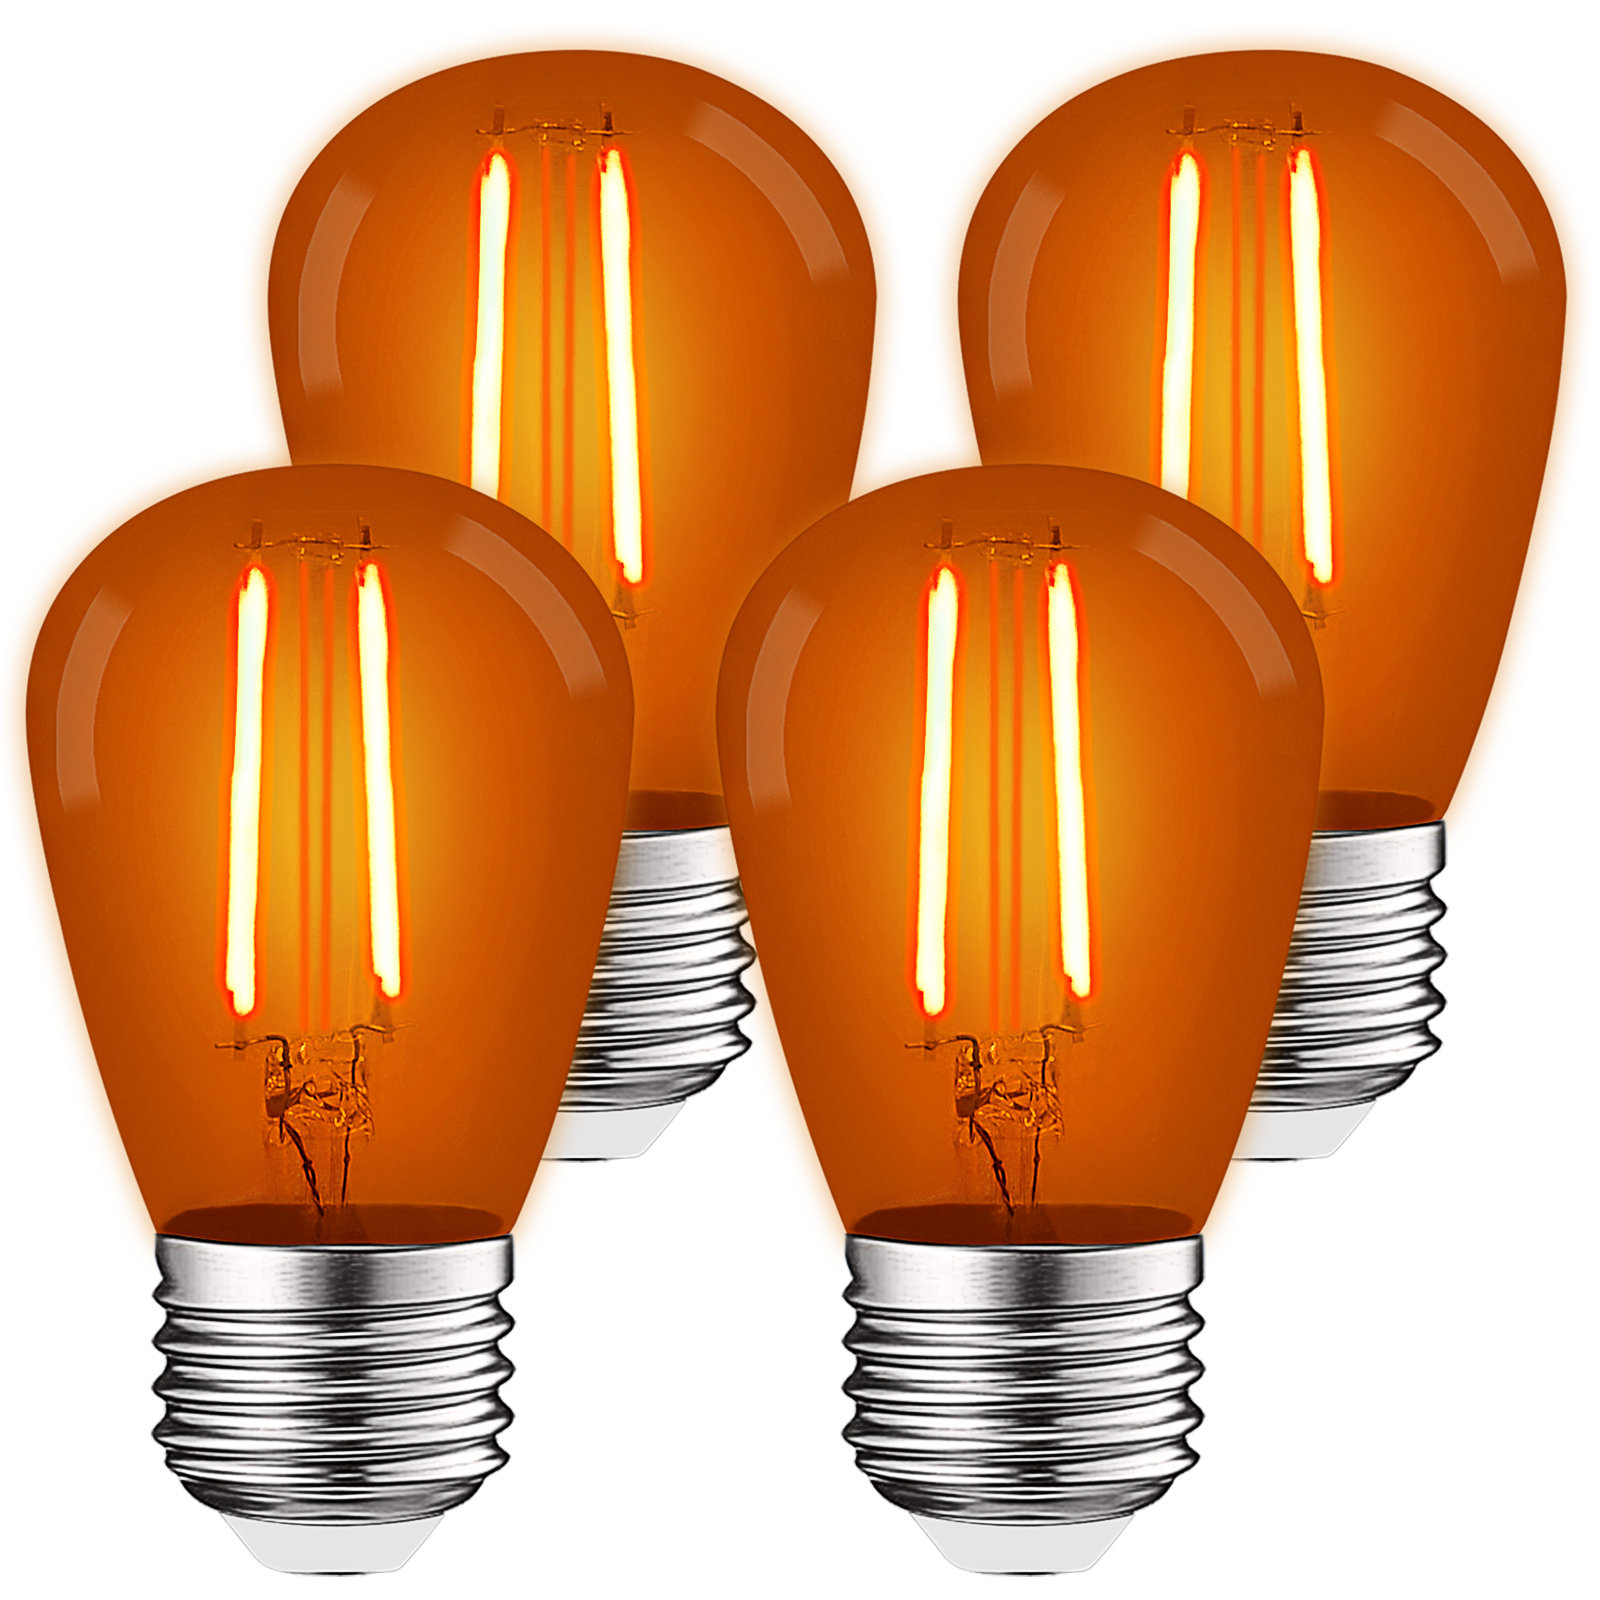 Luxrite 0.5 Watt S14 LED Colored String Light Bulb, E26/Medium (Standard)  Base